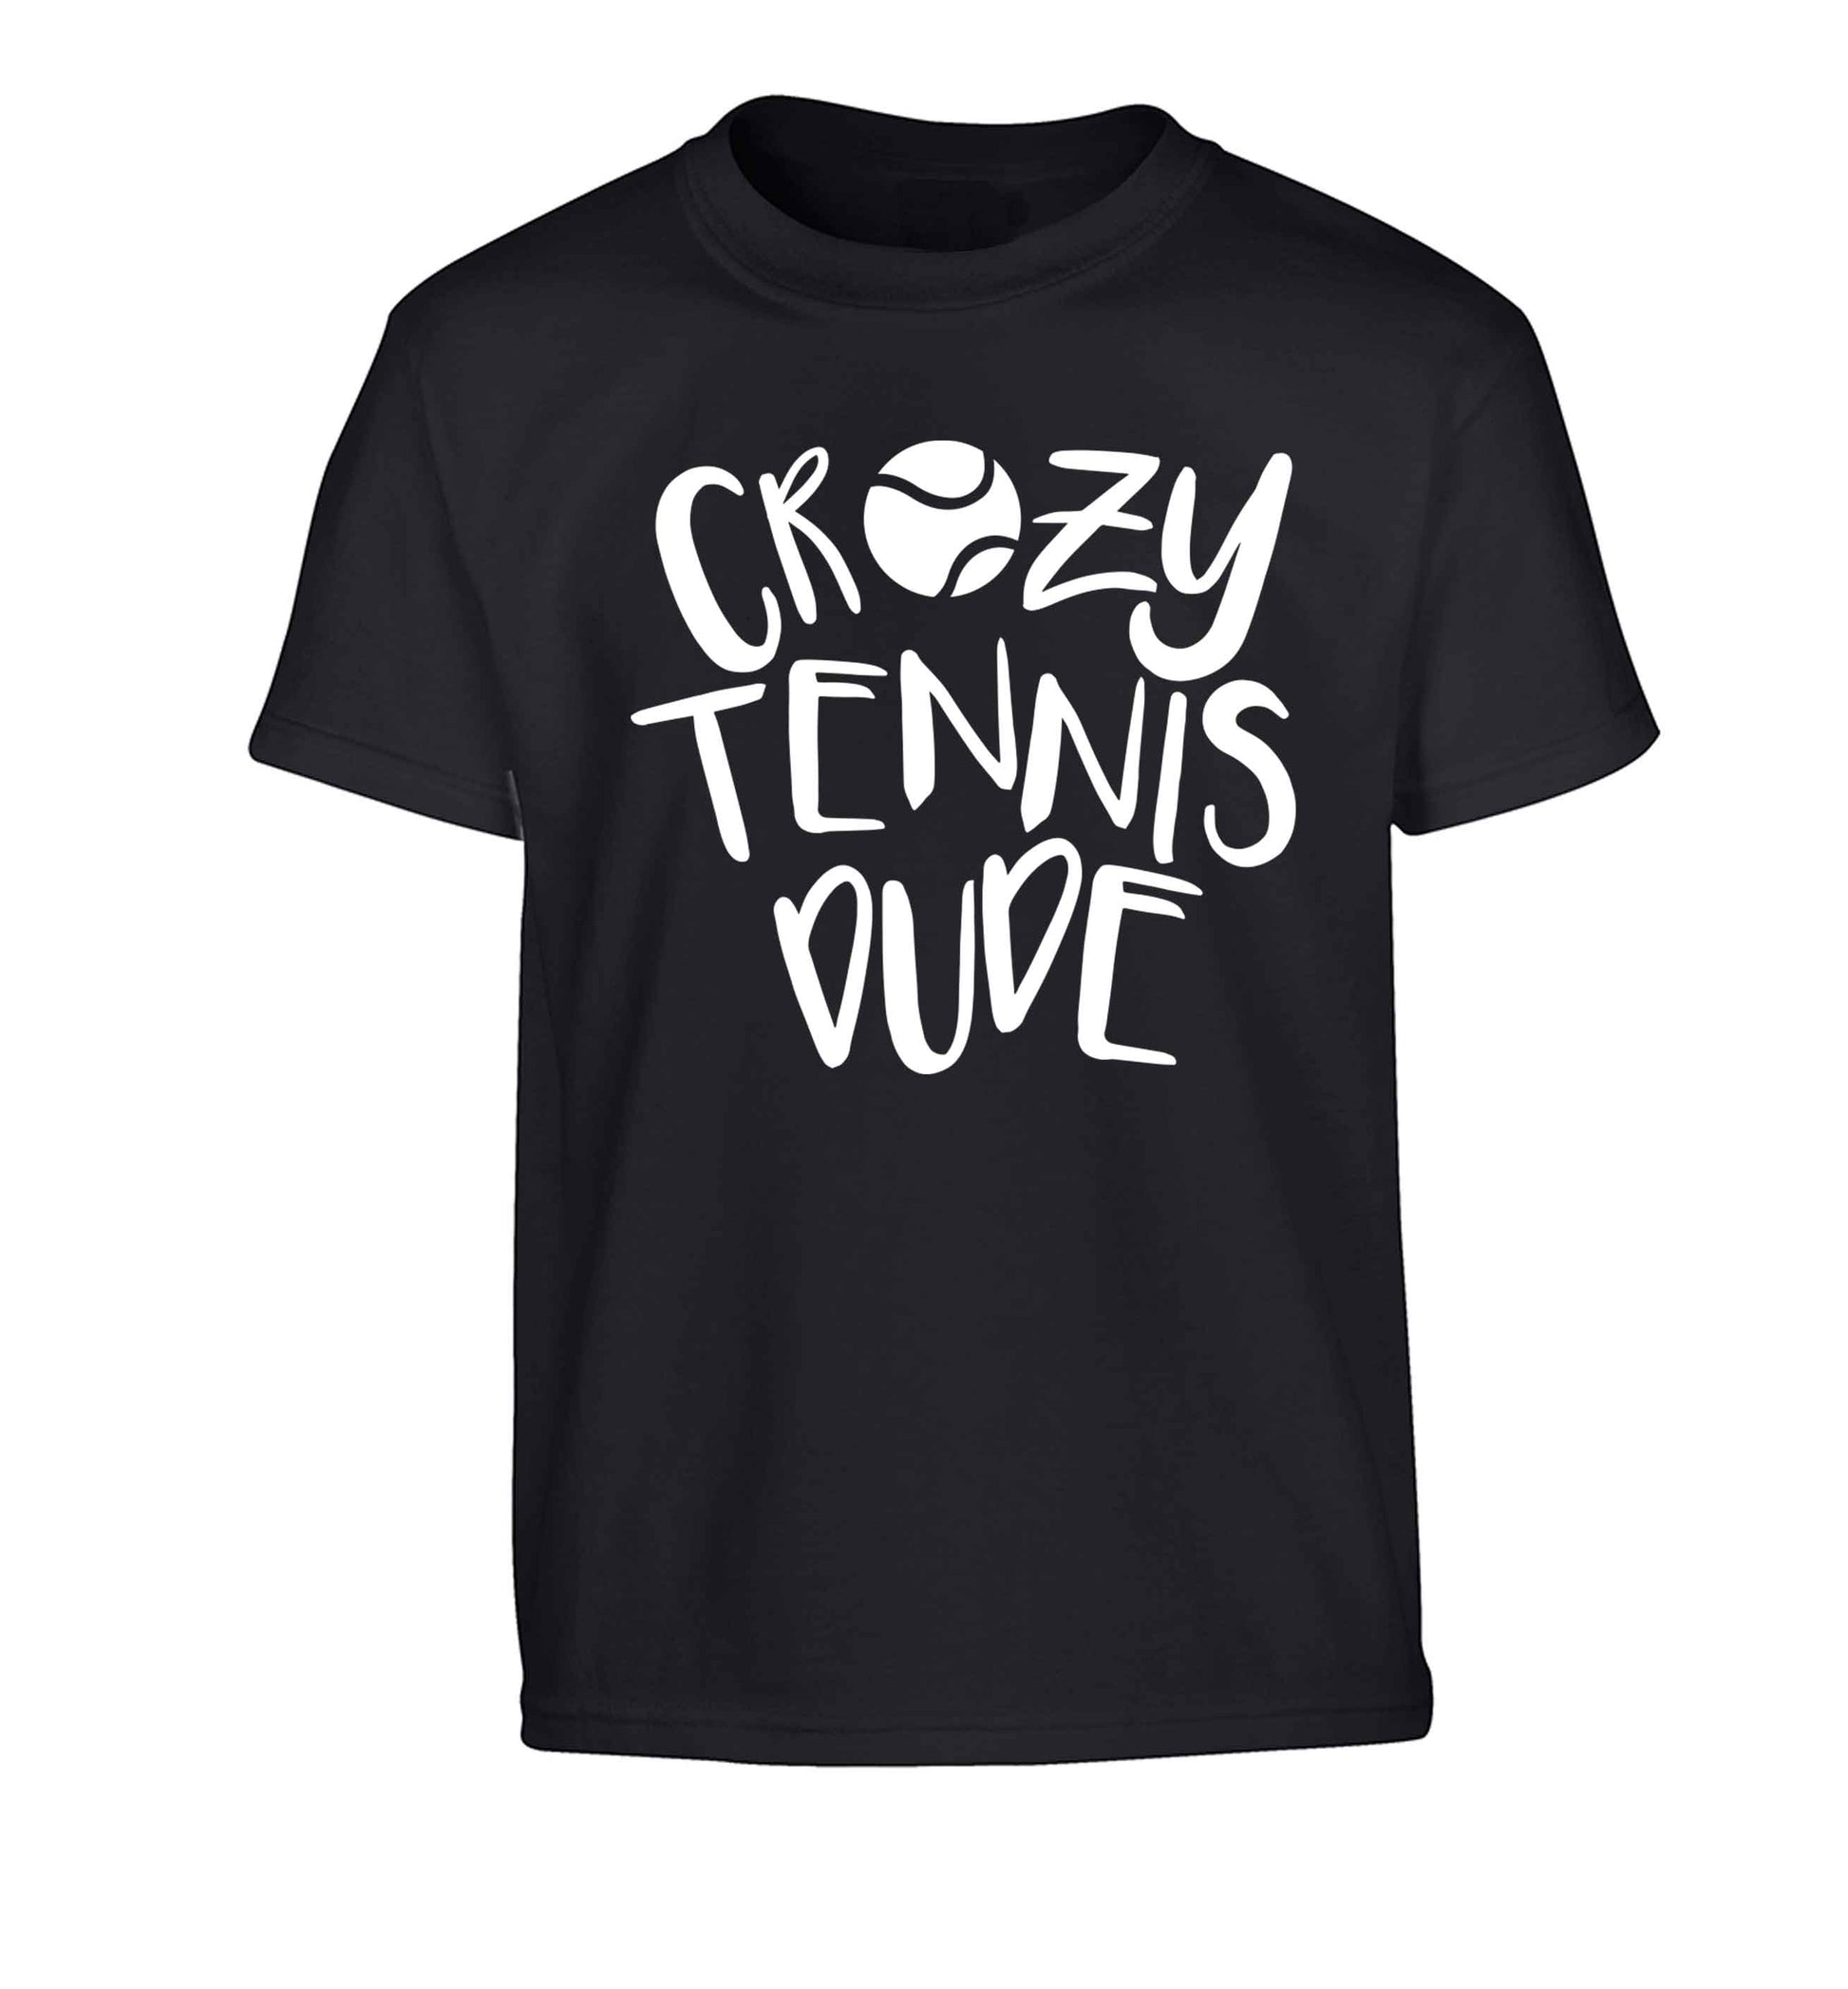 Crazy tennis dude Children's black Tshirt 12-13 Years